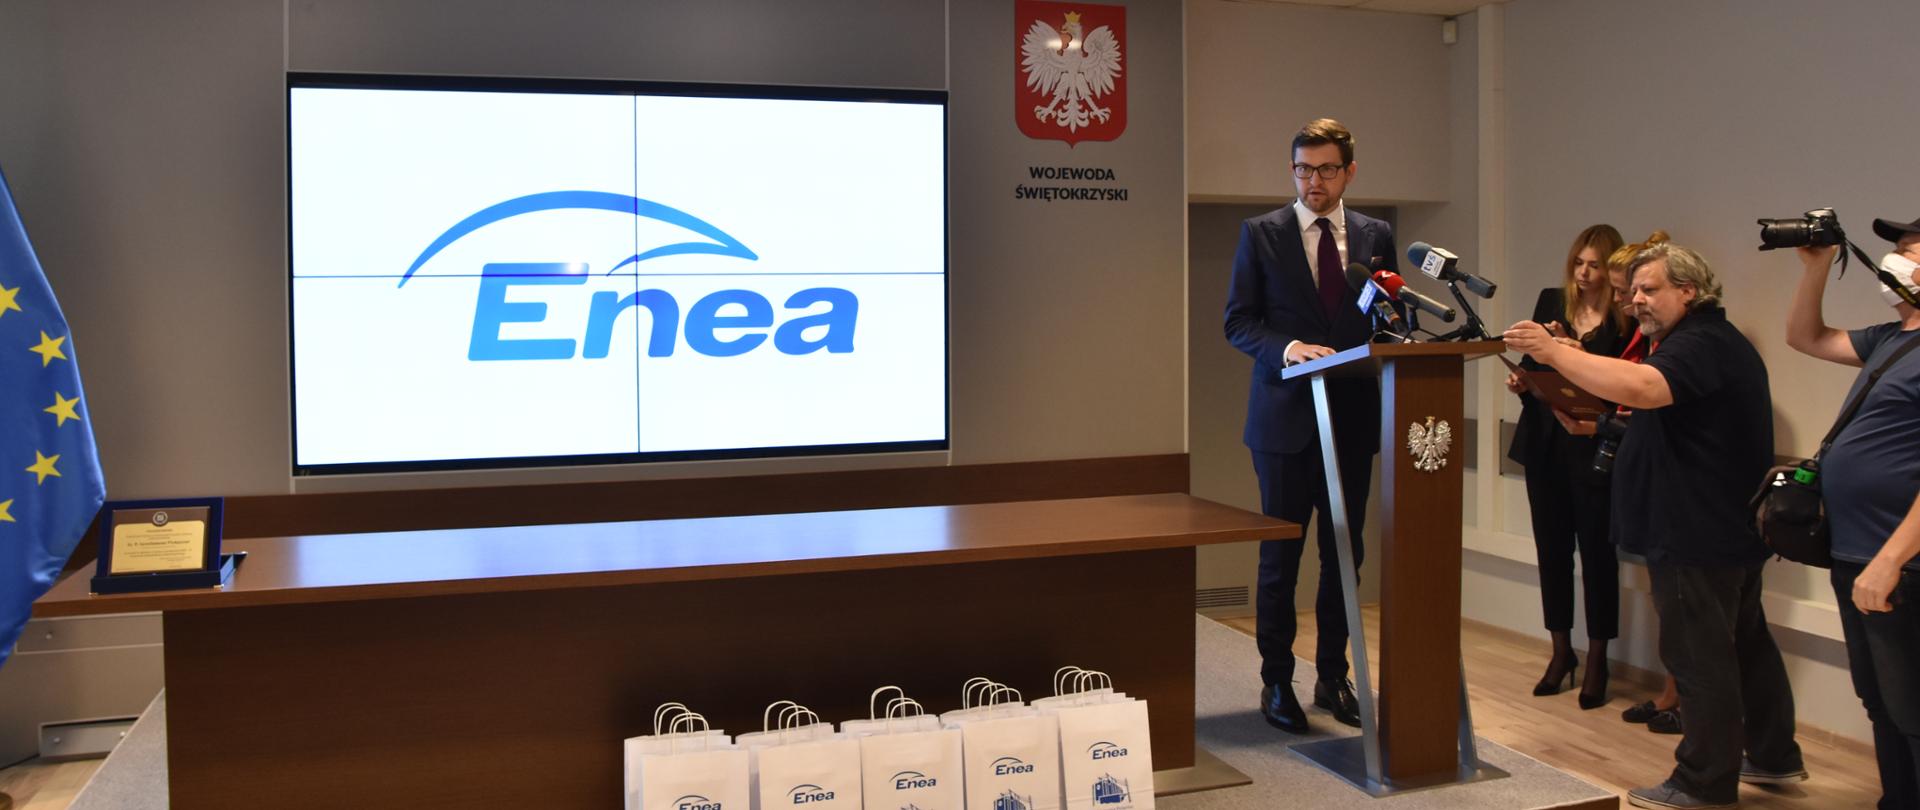 Minister Andrzej Śliwka stoi przy mównicy, po lewej stronie ekran z logo Enei, po prawej stojący obok ministra dziennikarze